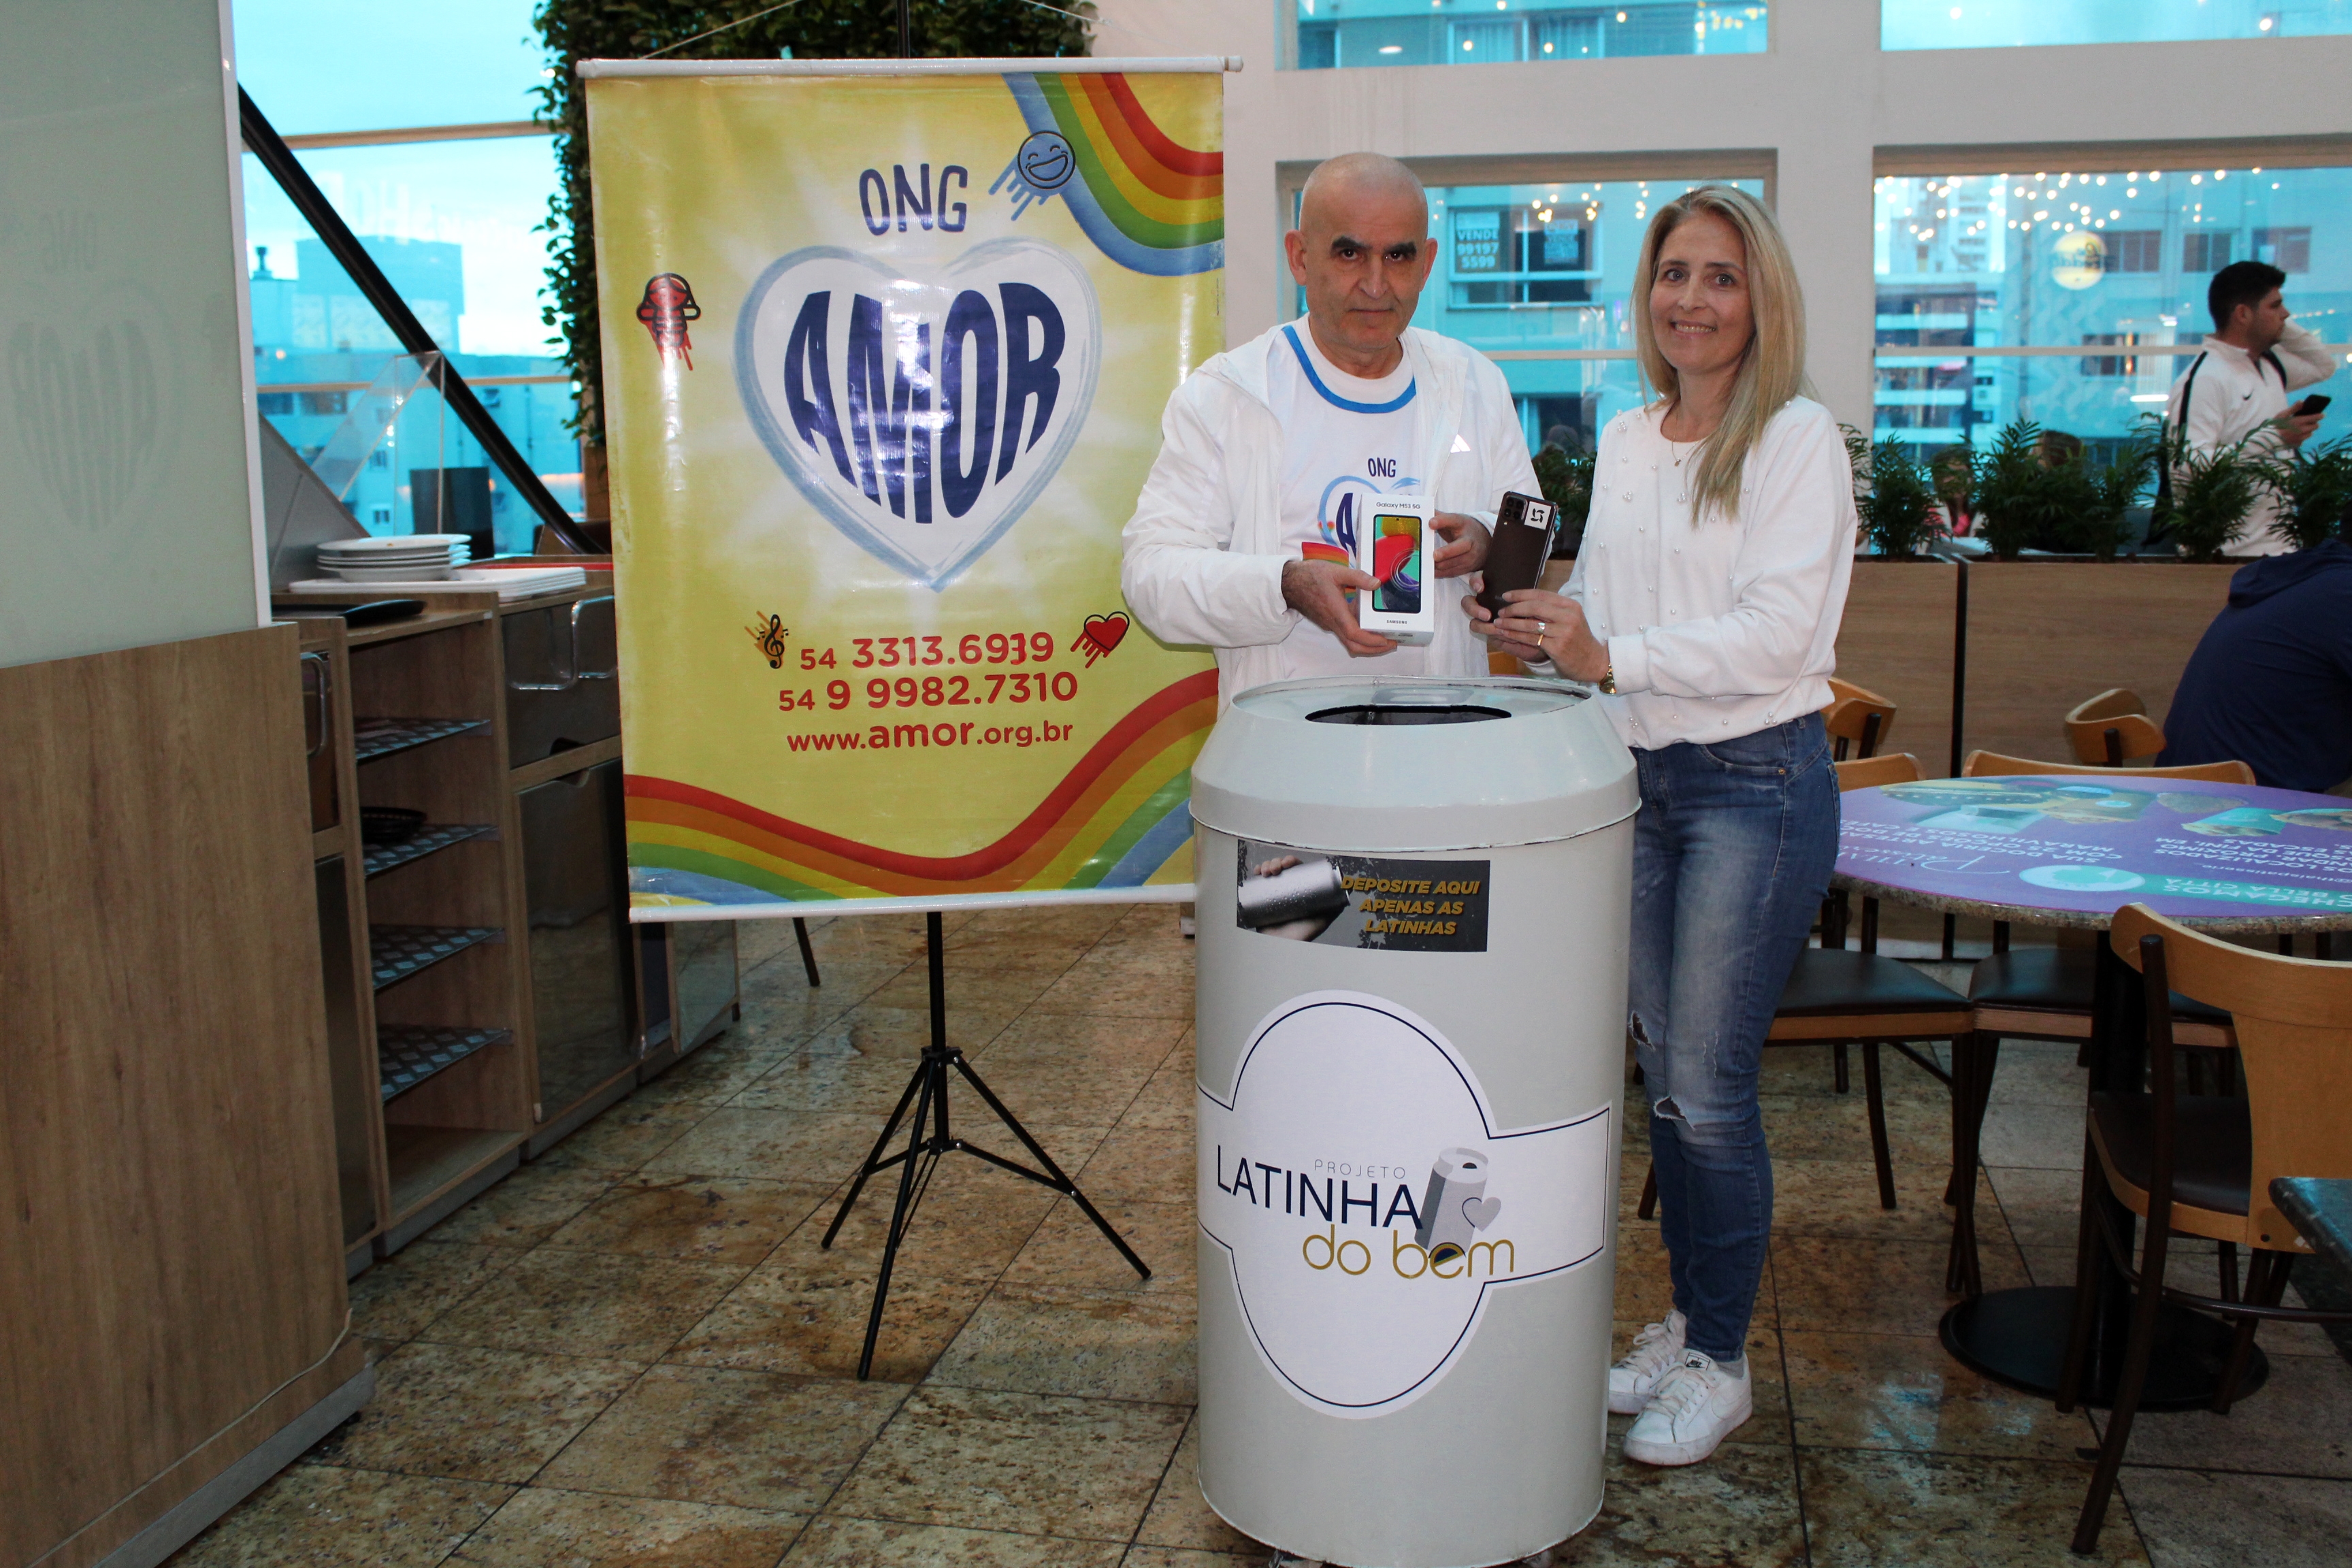 Projeto Latinha do Bem faz doação para a ONG Amor e anuncia Leão XIII como a próxima beneficiada